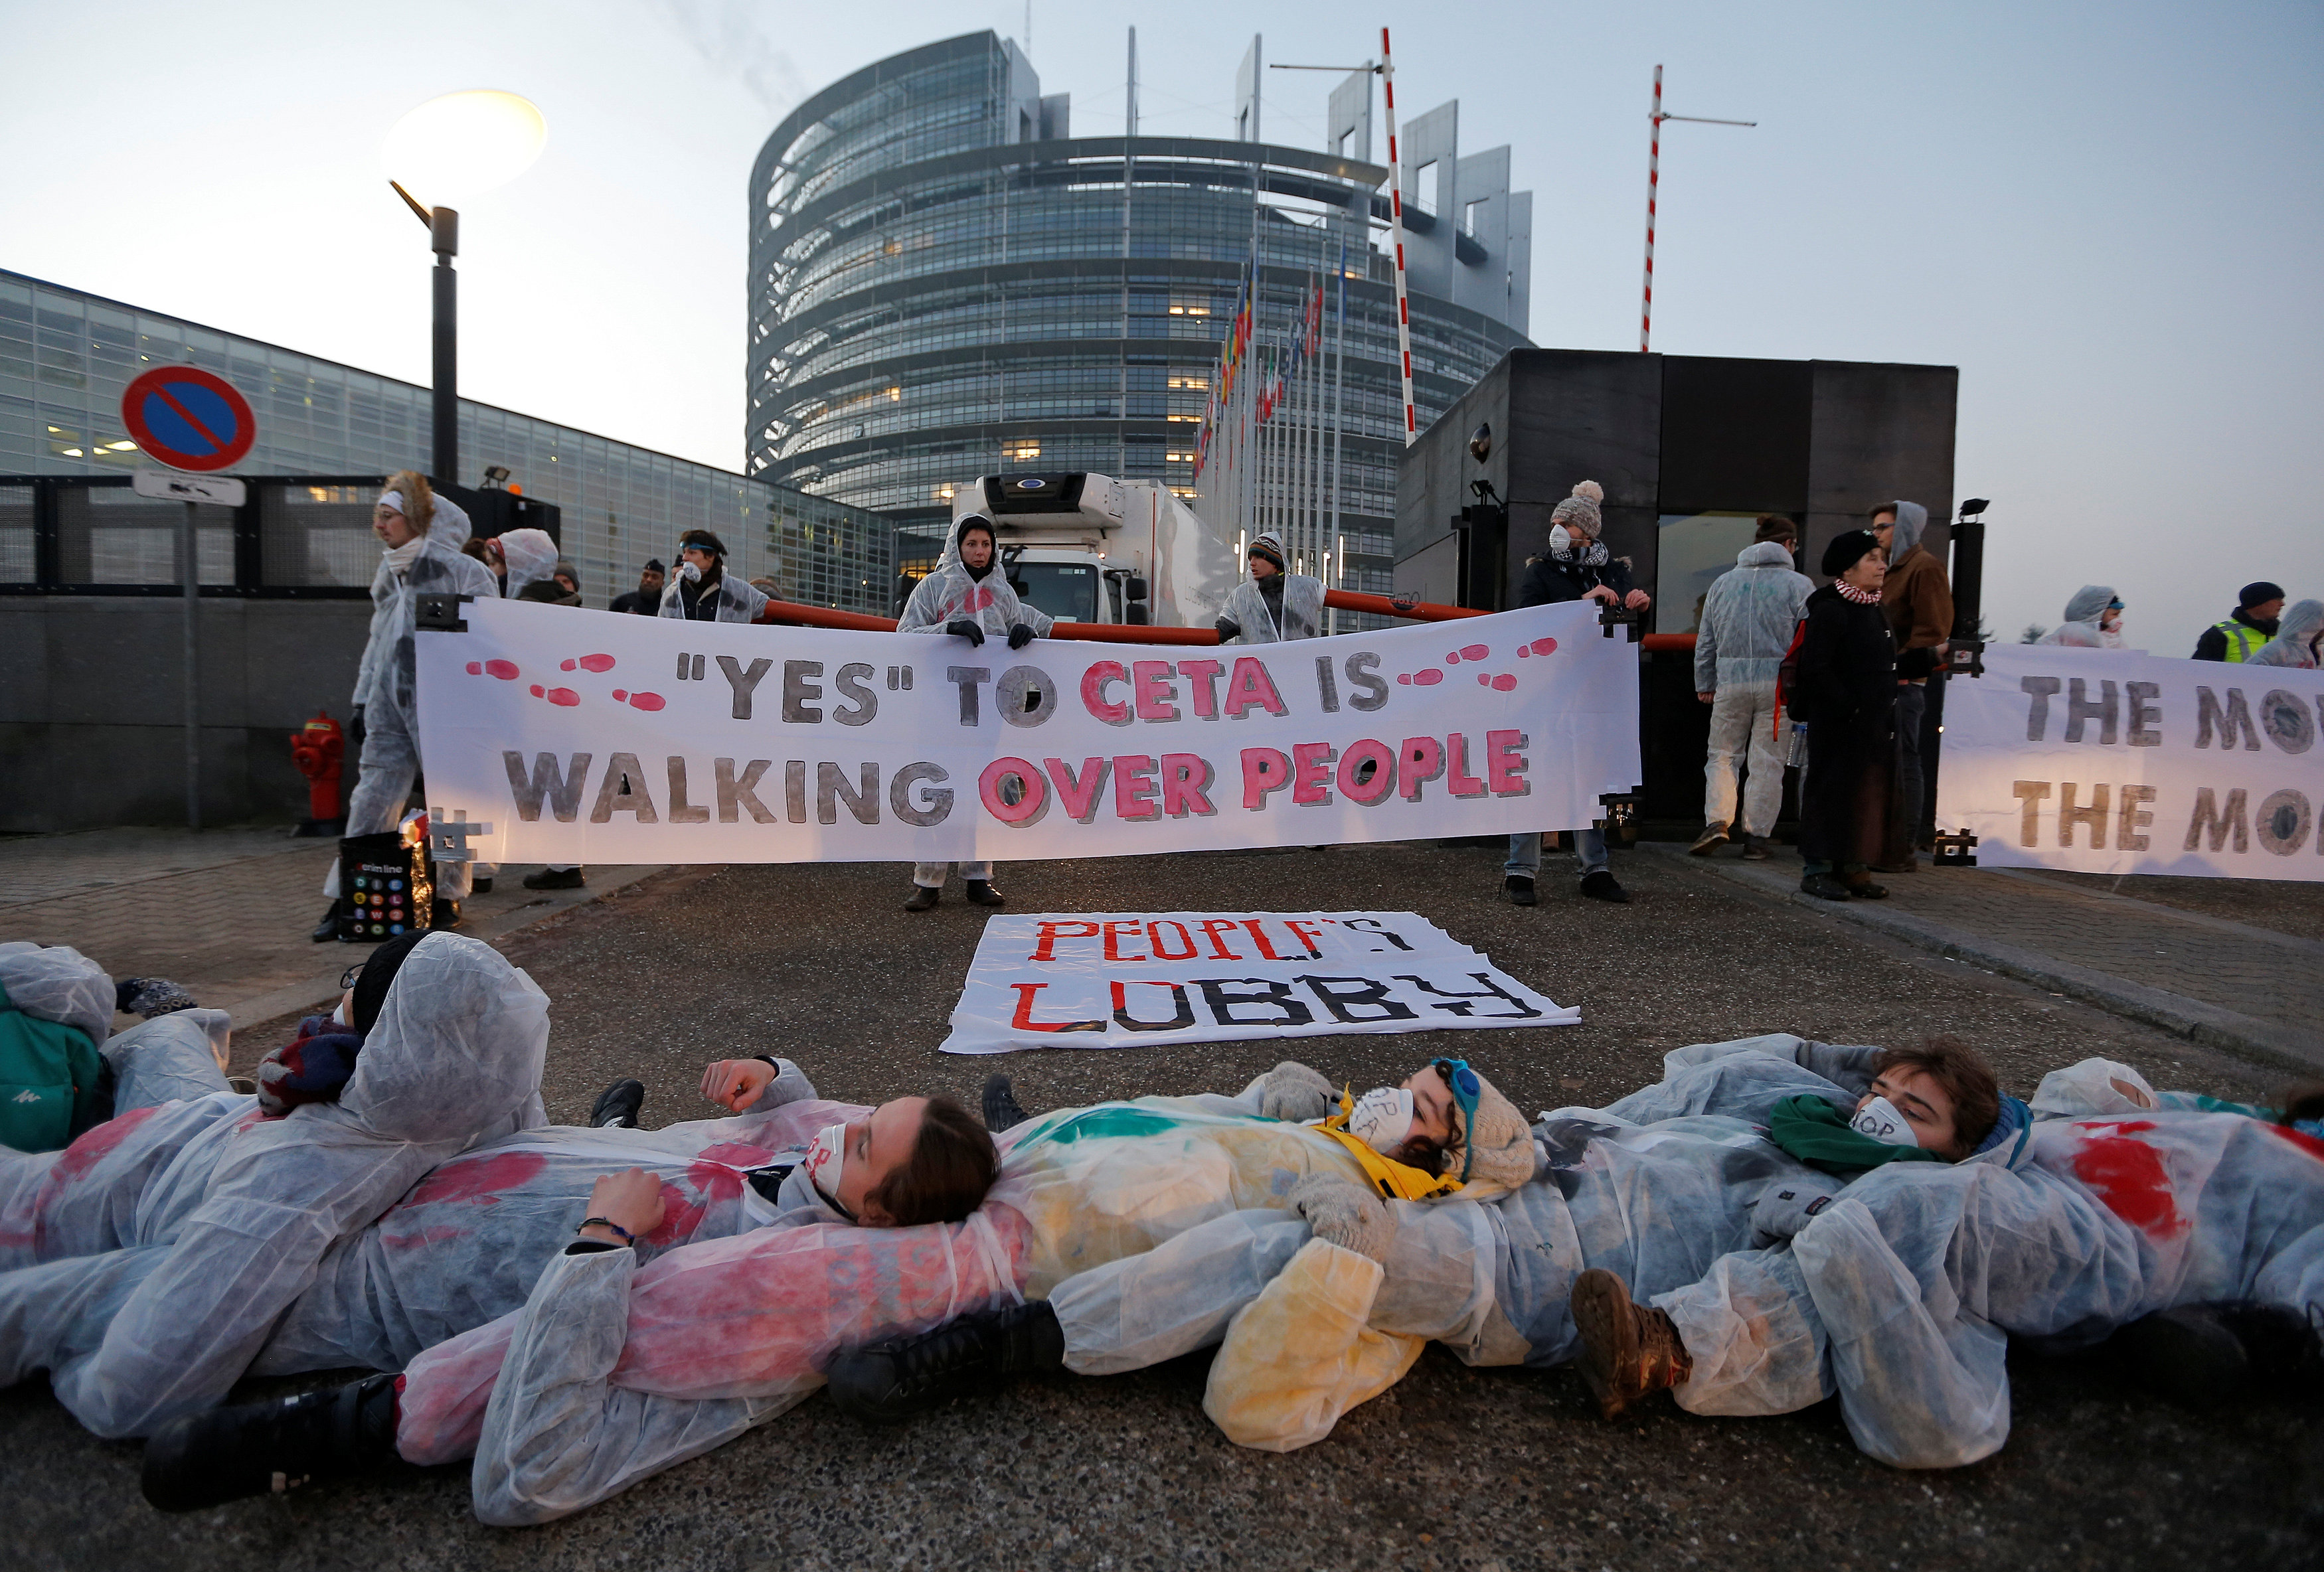 متظاهرو ن يمثلون مشهد موت فى احتجاج على اتفاقية اقتصادية بين الاتحاد الأوروبى وكندا